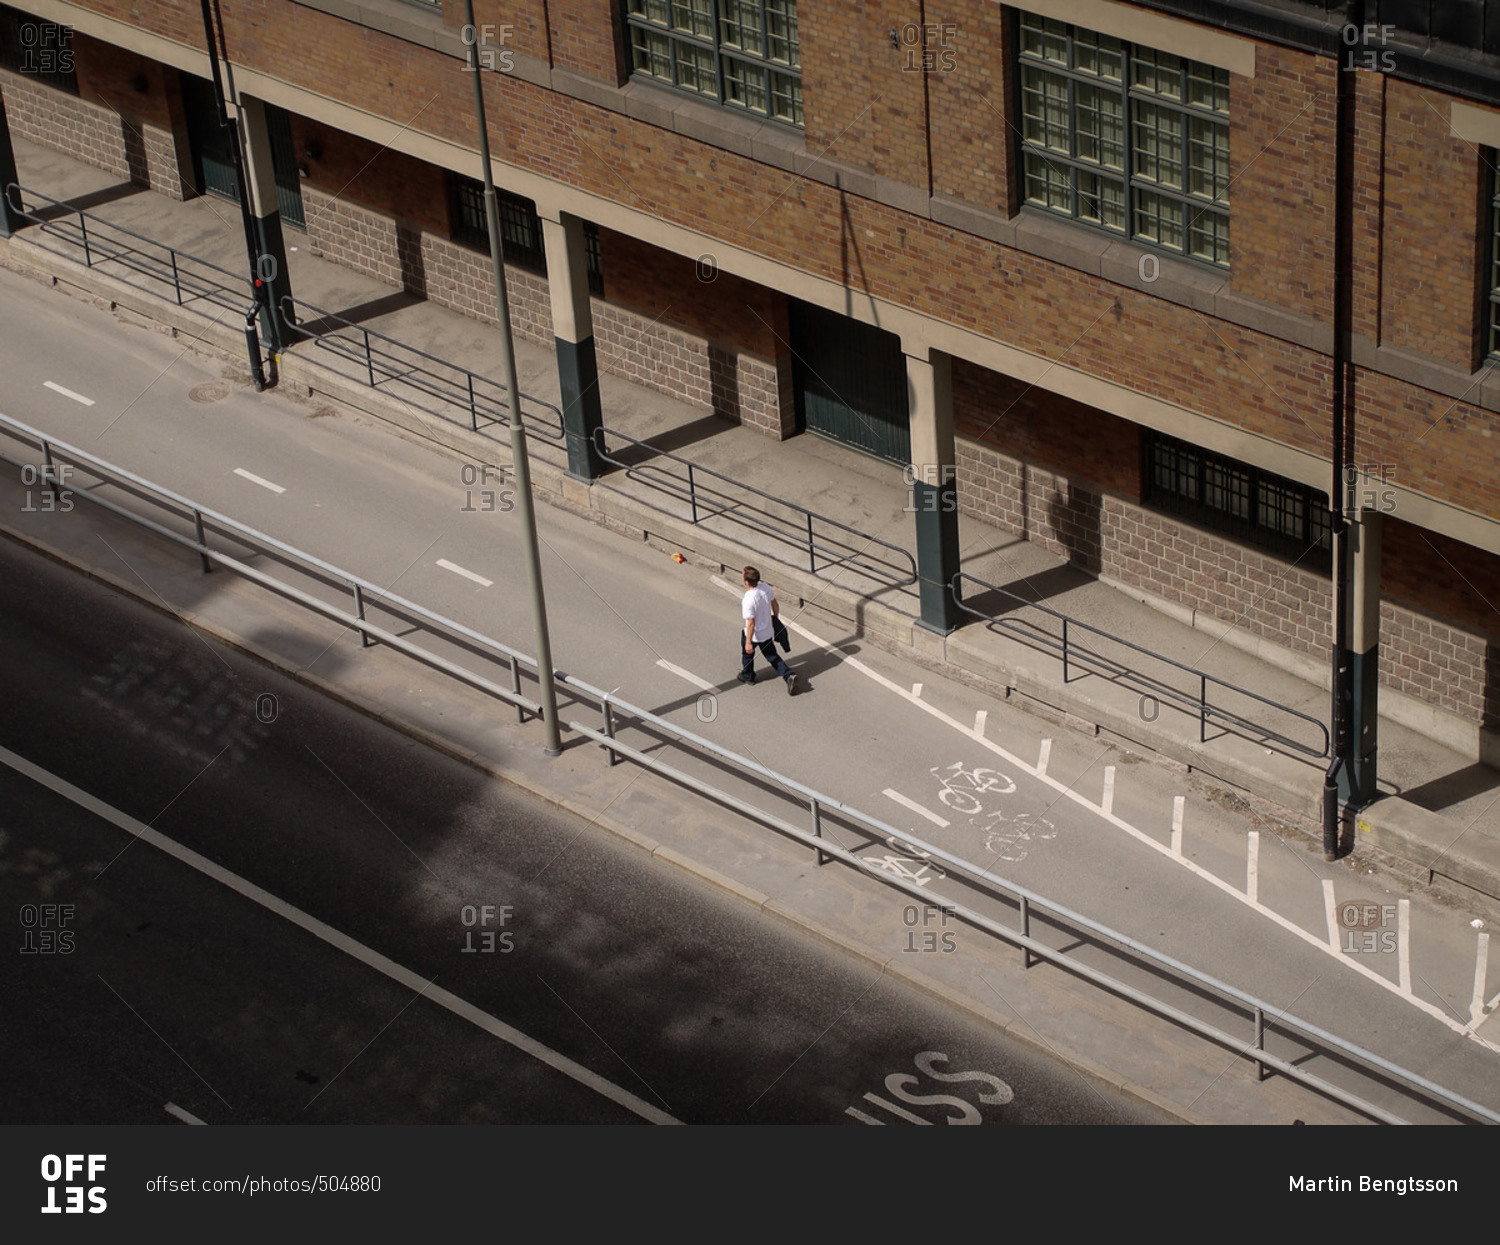 Man walking in a bike lane on an empty city street